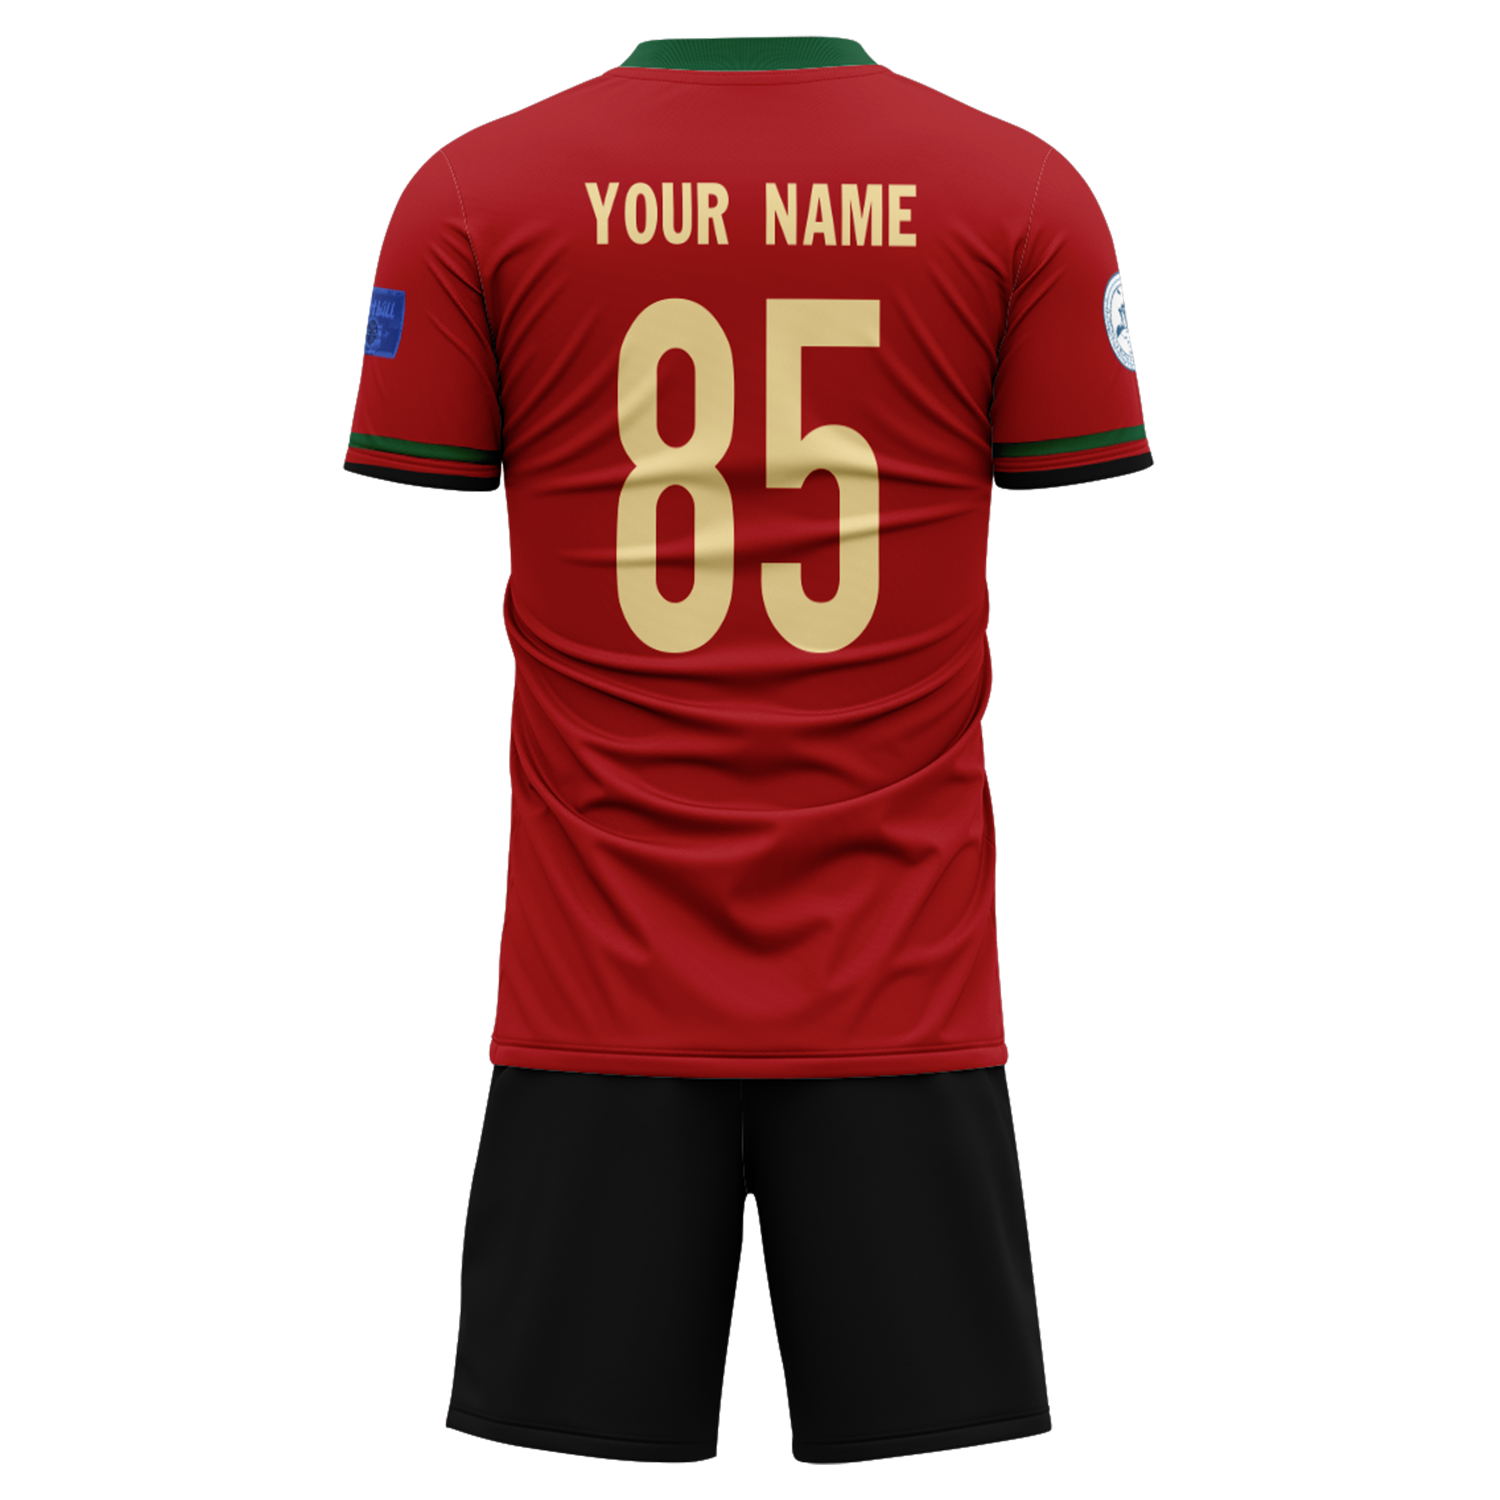 Trajes de fútbol personalizados de la selección de Portugal de la Copa del Mundo 2022